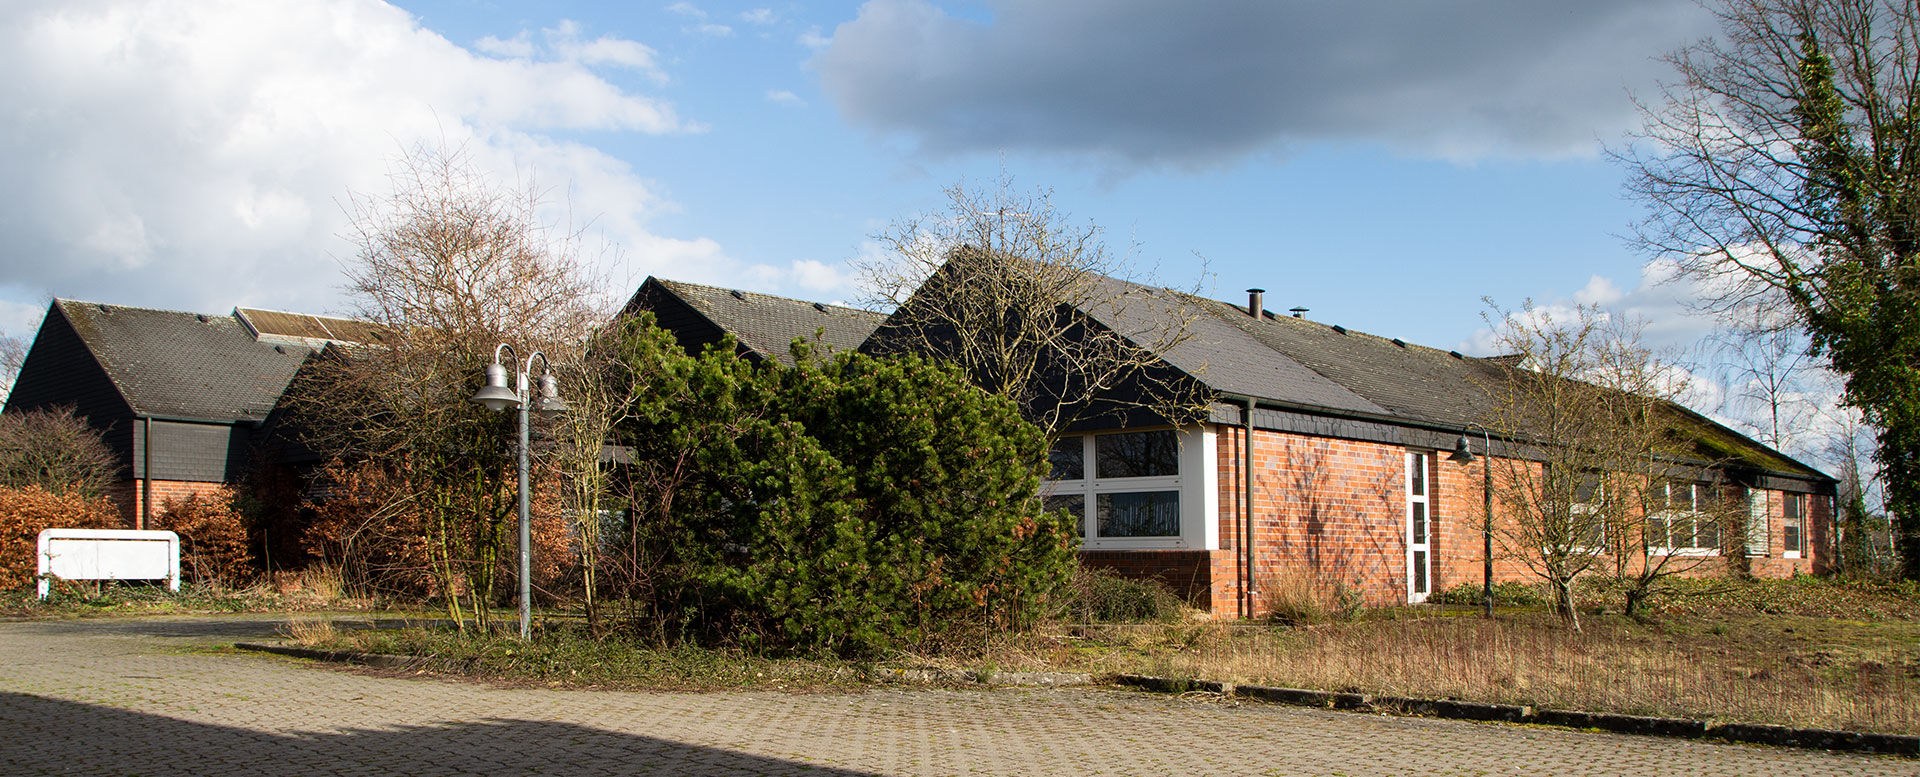 Immobilie - Büro- und Lagerflächen in Emsdetten